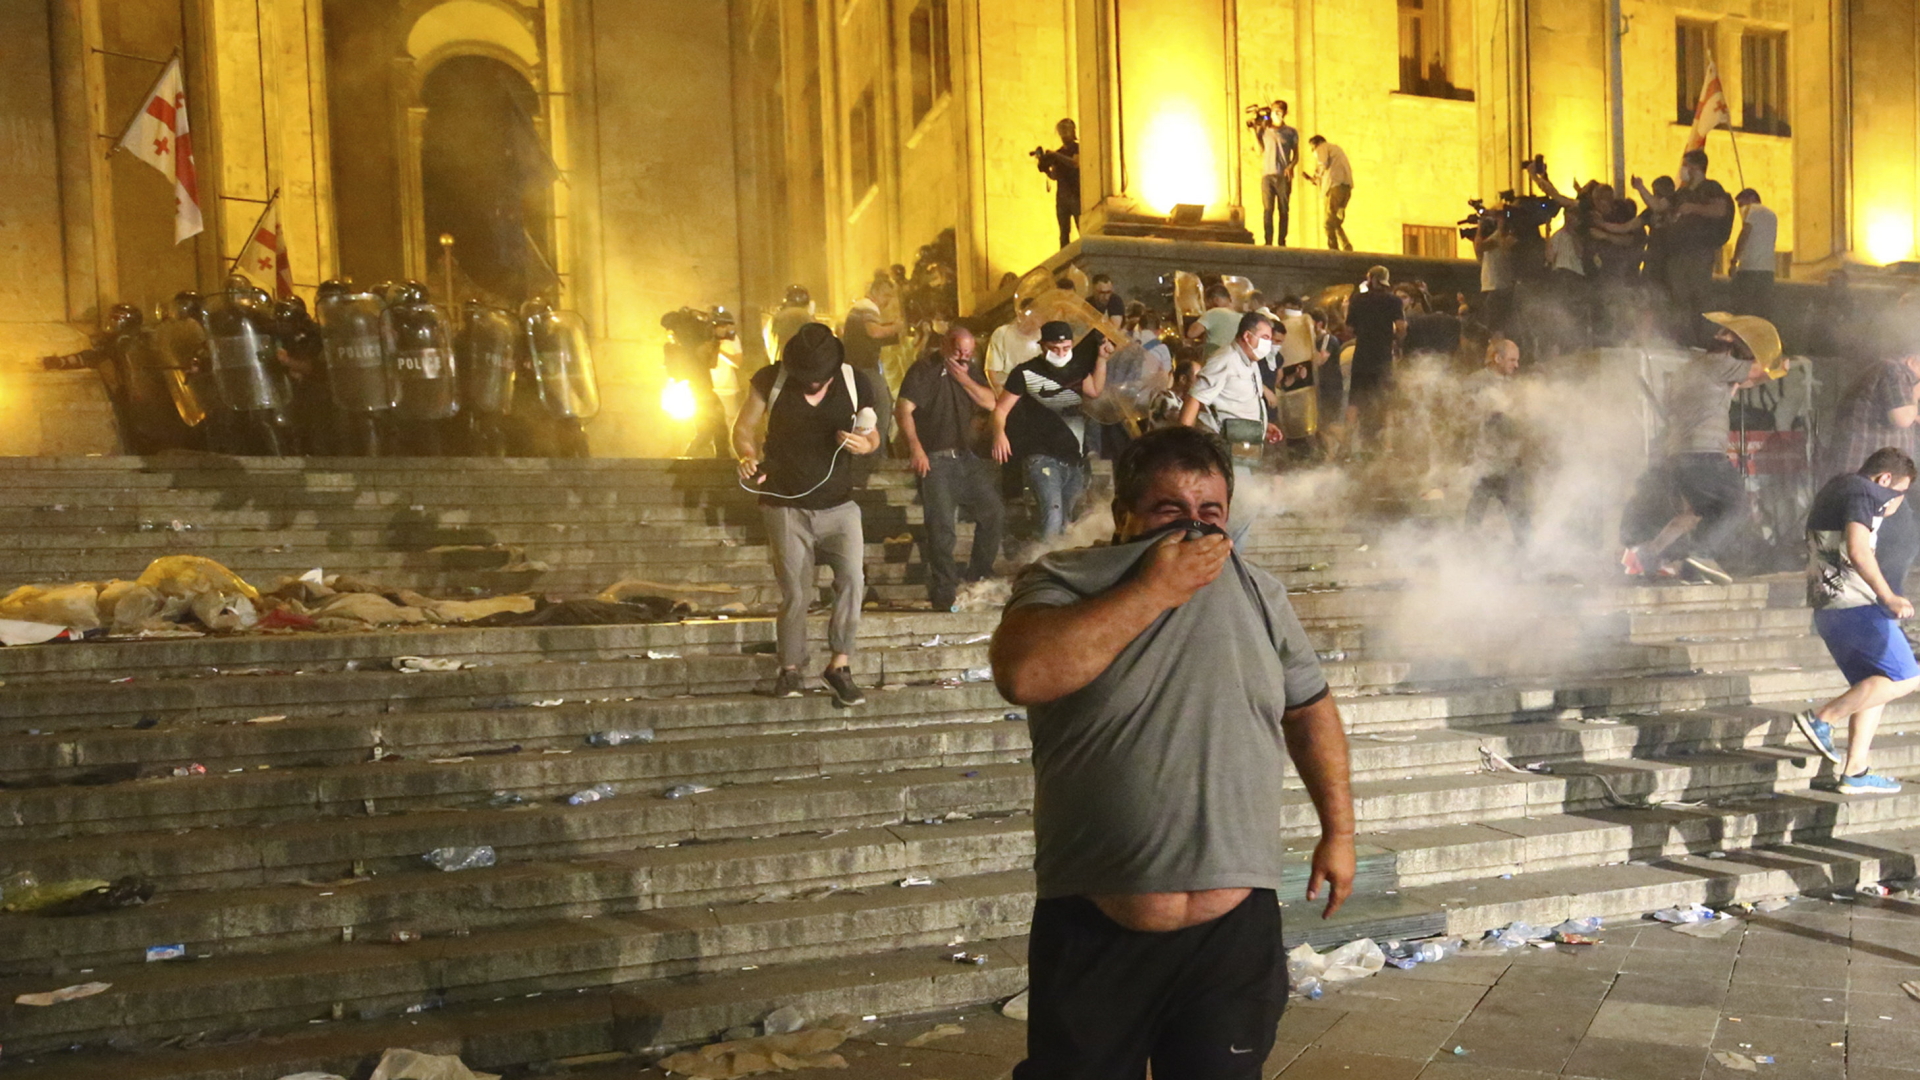 Einsatz von Tränengas gegen Demonstranten in Tiflis | Bildquelle: AP